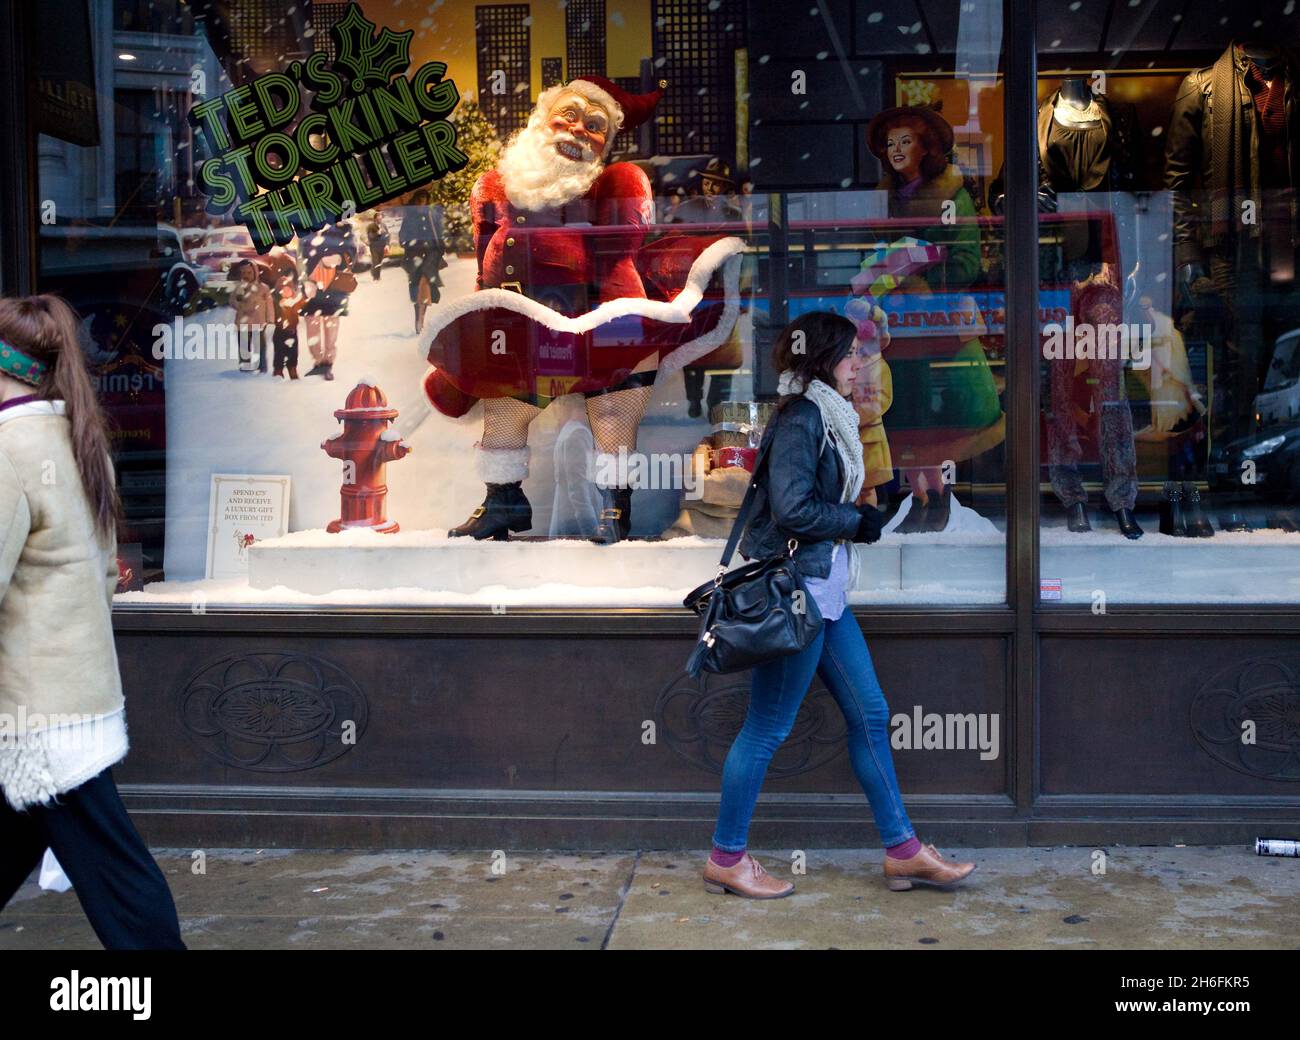 Un Saucy Babbo Natale fa parte di una vetrina Ted Baker a Londra. La scena include un commovente Babbo Natale che solleva la sua tunica per rivelare calze e sospensori. Un'esposizione simile nel ramo Cambridge di Ted Baker ha già ricevuto reclami. Con un cliente che lo ha fatto marchiare come 'cick'. Foto Stock